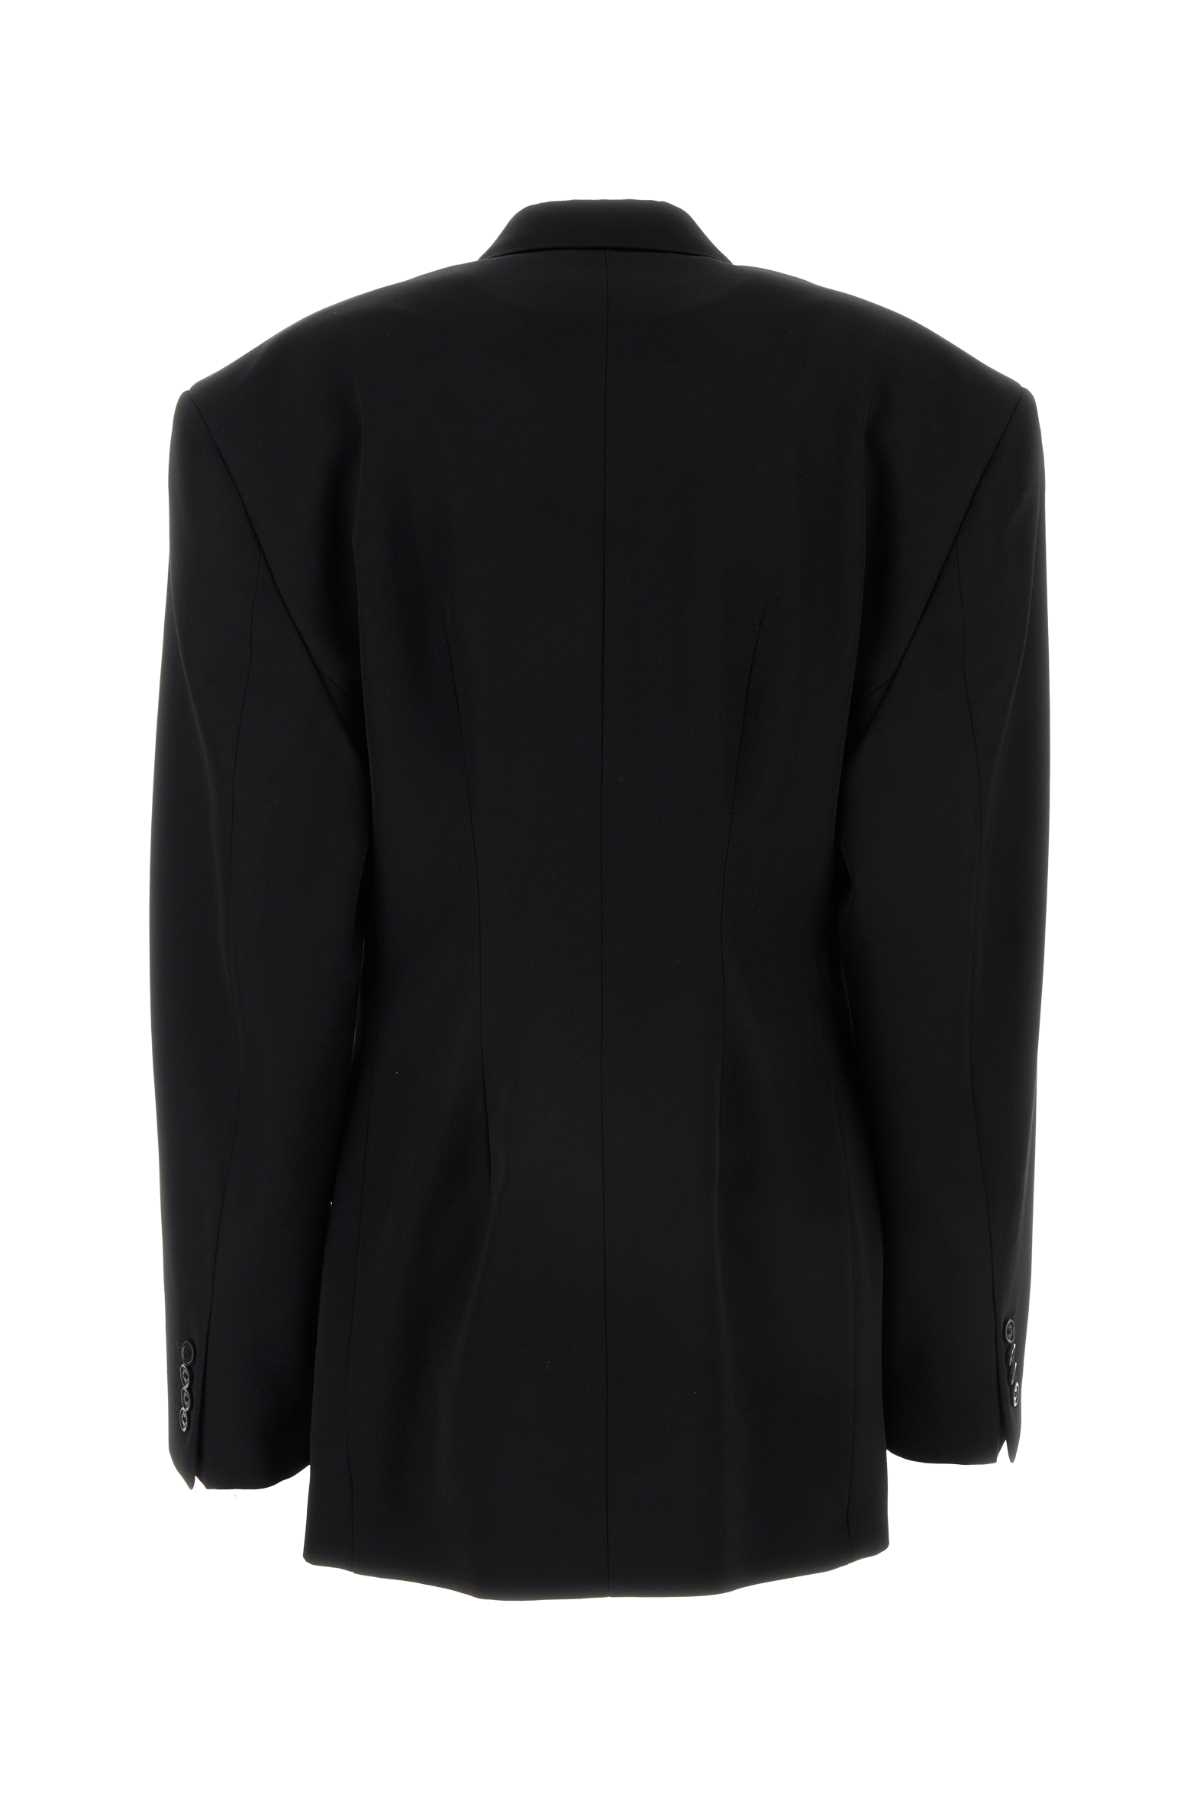 Balenciaga Black Barathea Oversize Cinched Blazer